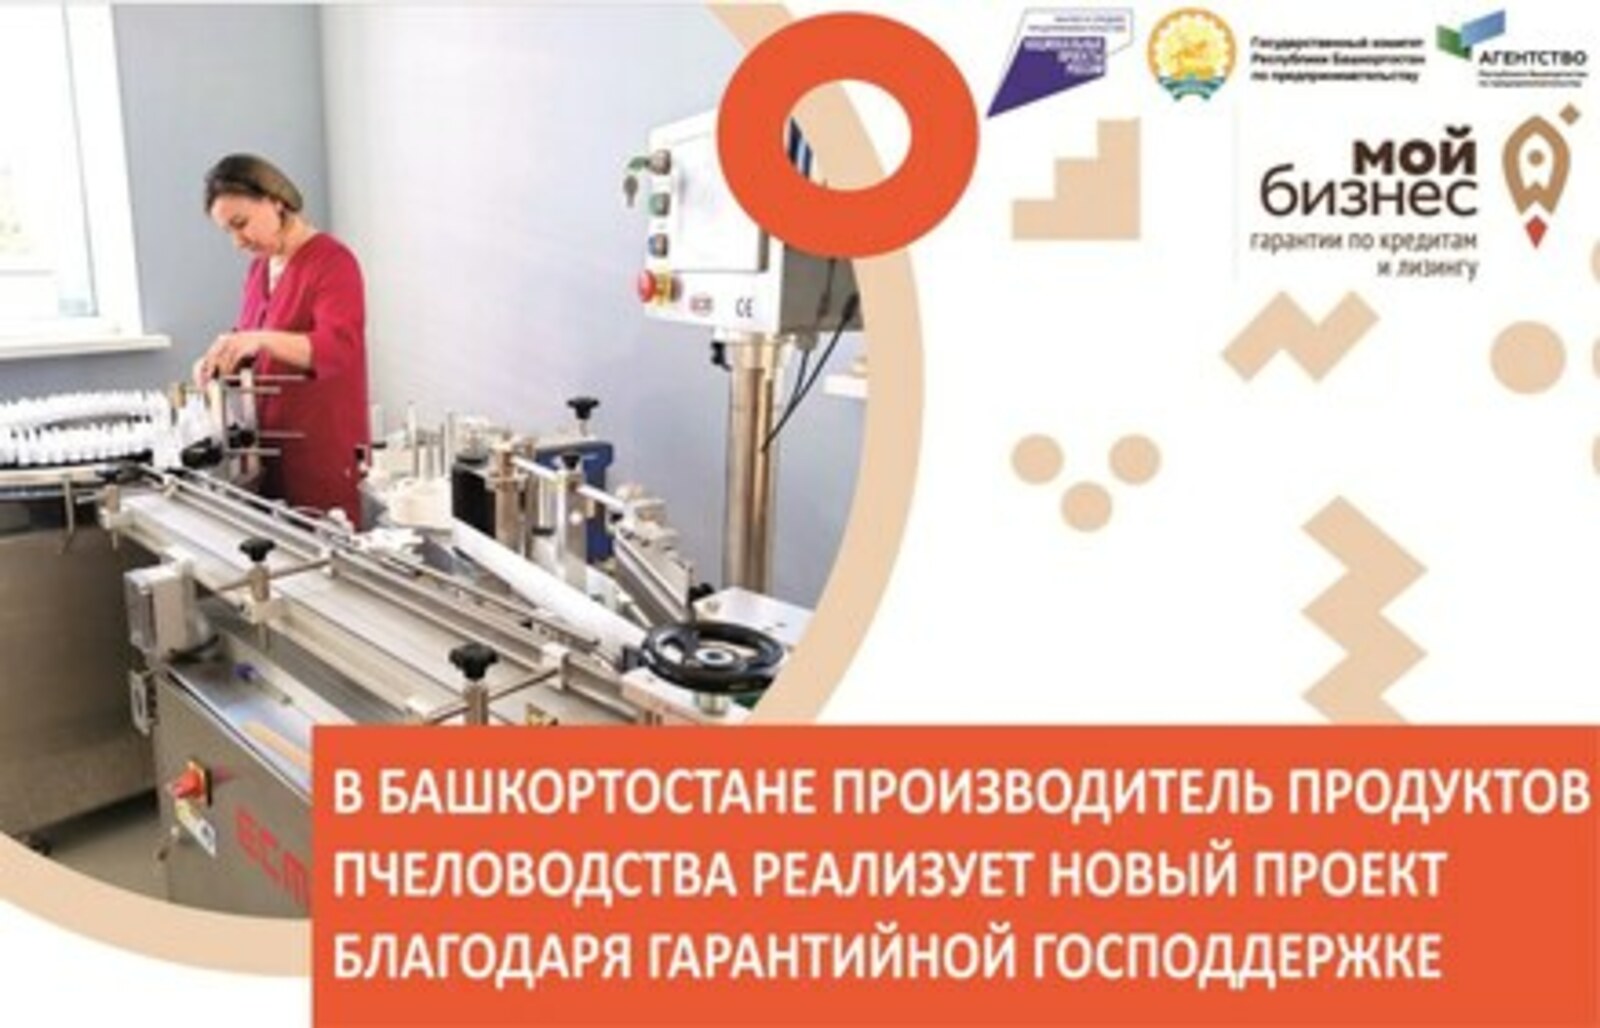 В Башкортостане производитель продуктов пчеловодства реализует новый проект благодаря гарантийной господдержке